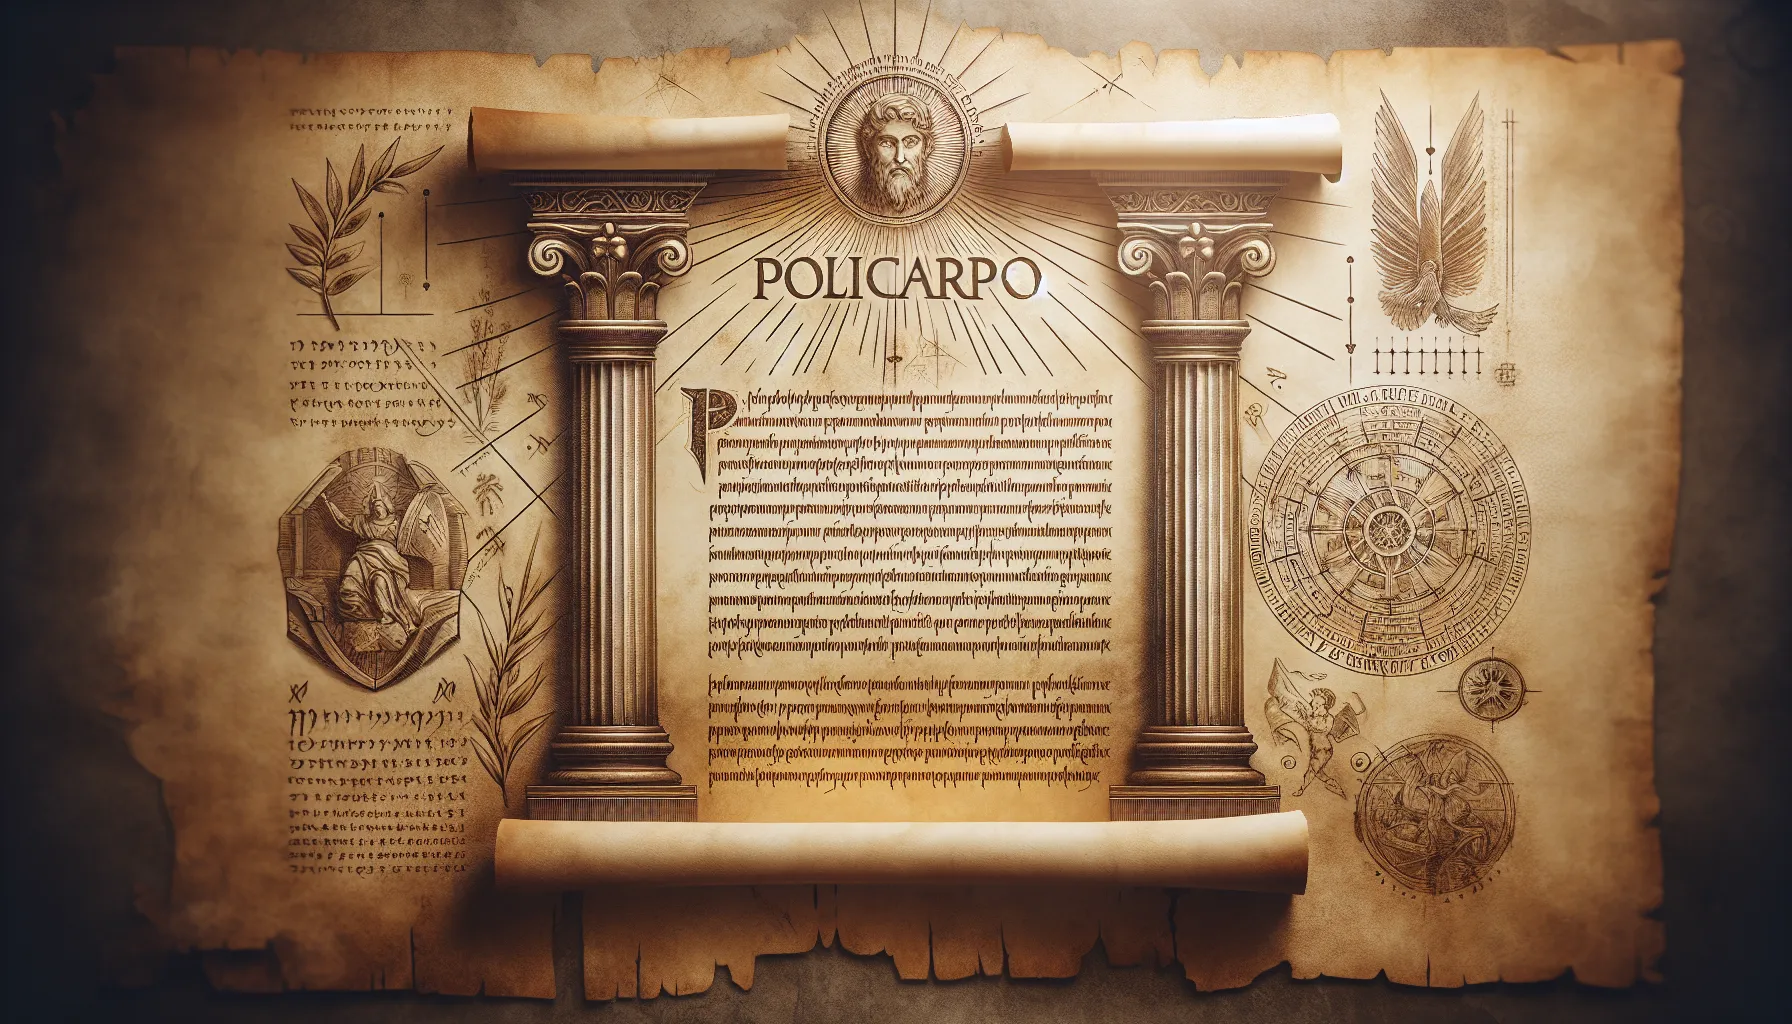 Imagen de una antigua escritura en pergamino con el nombre de Policarpo y una cita bíblica resaltada.